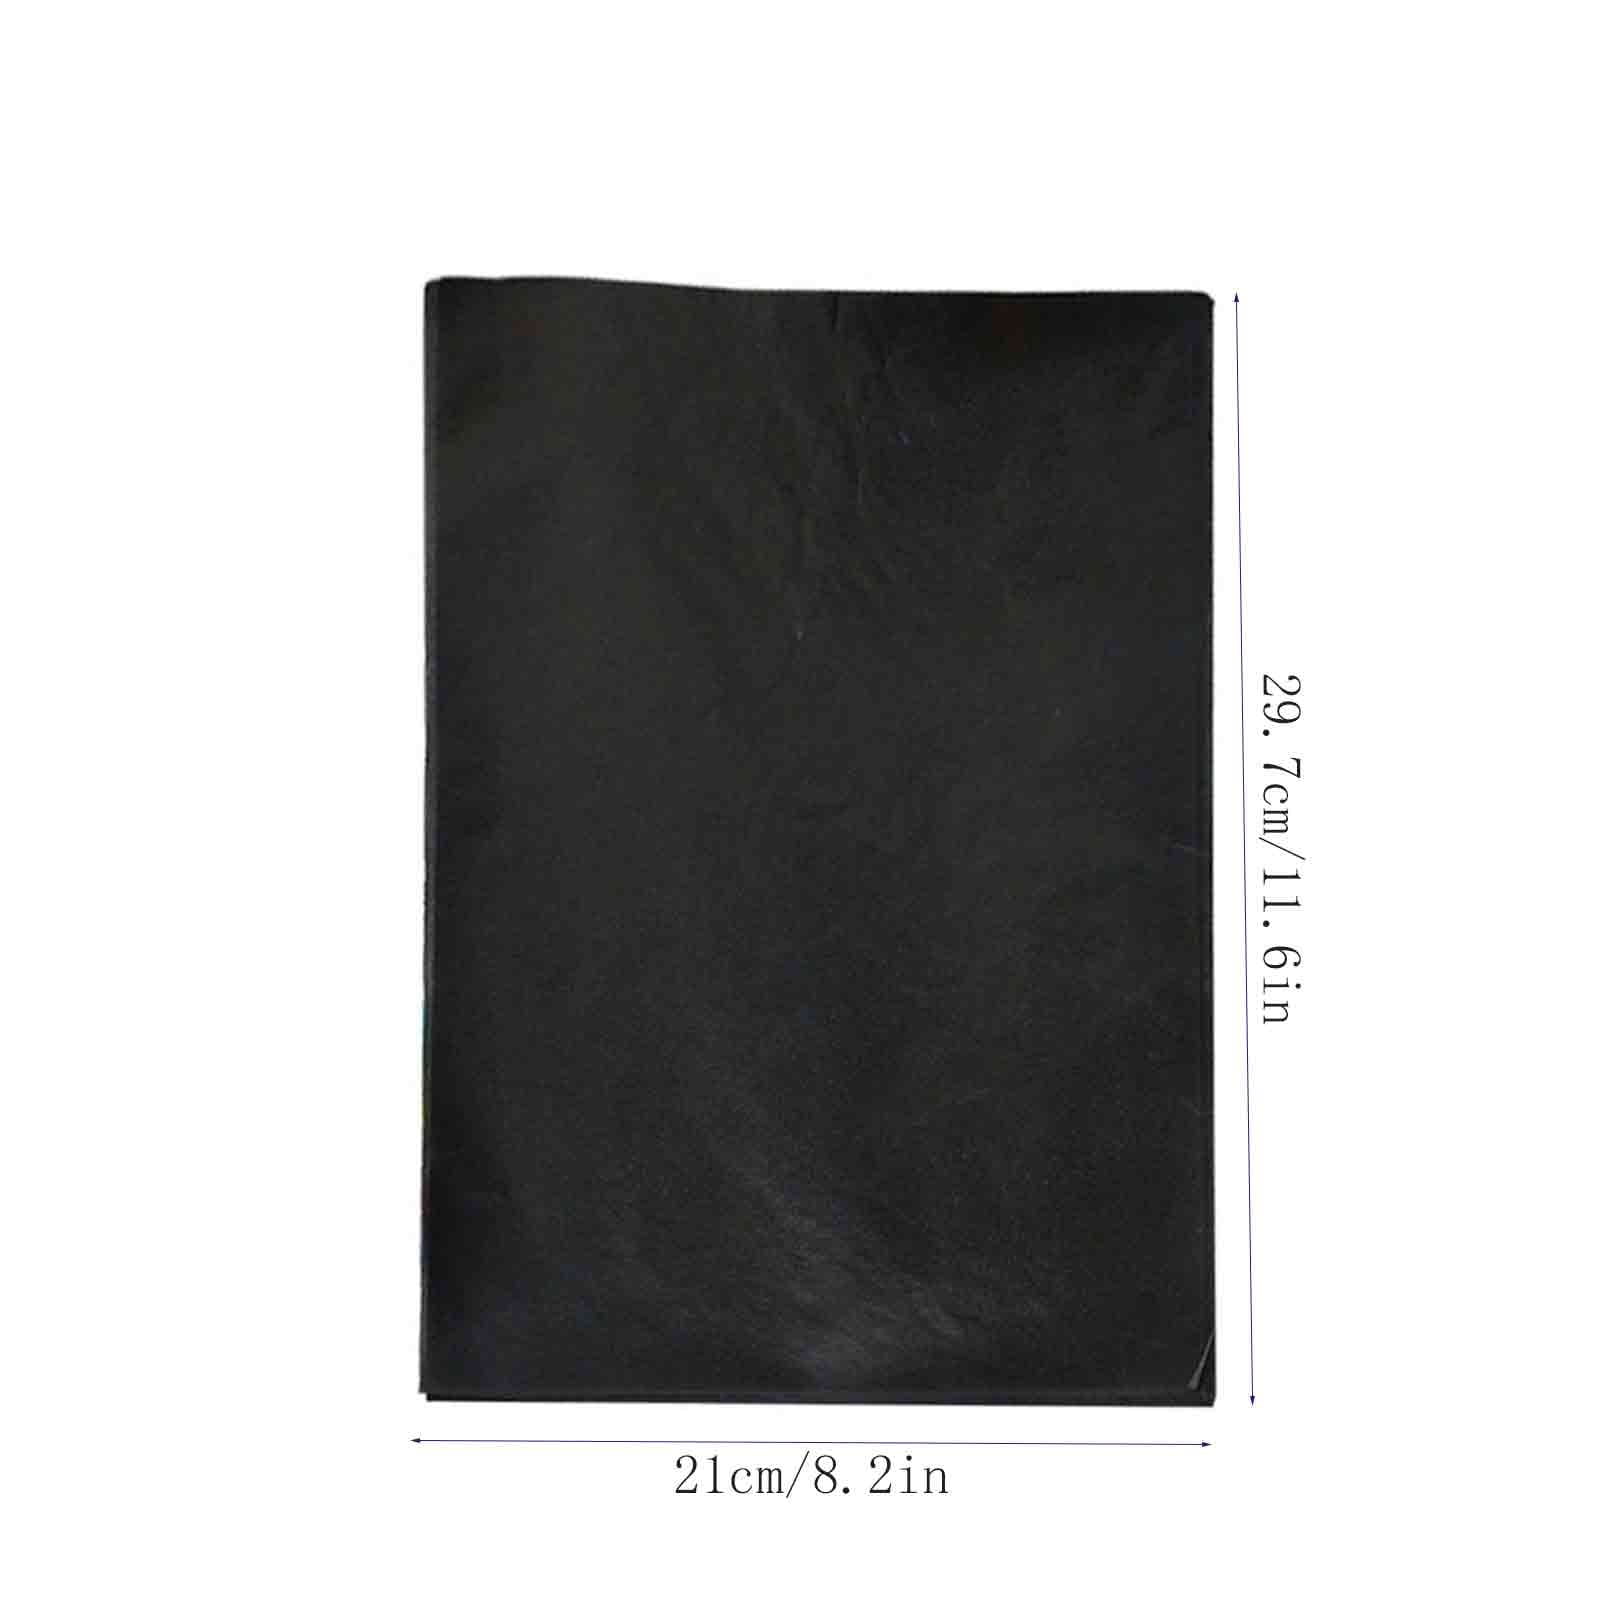 100pcs A4 Carbon Paper Black Legible Graphite Copy Paper for